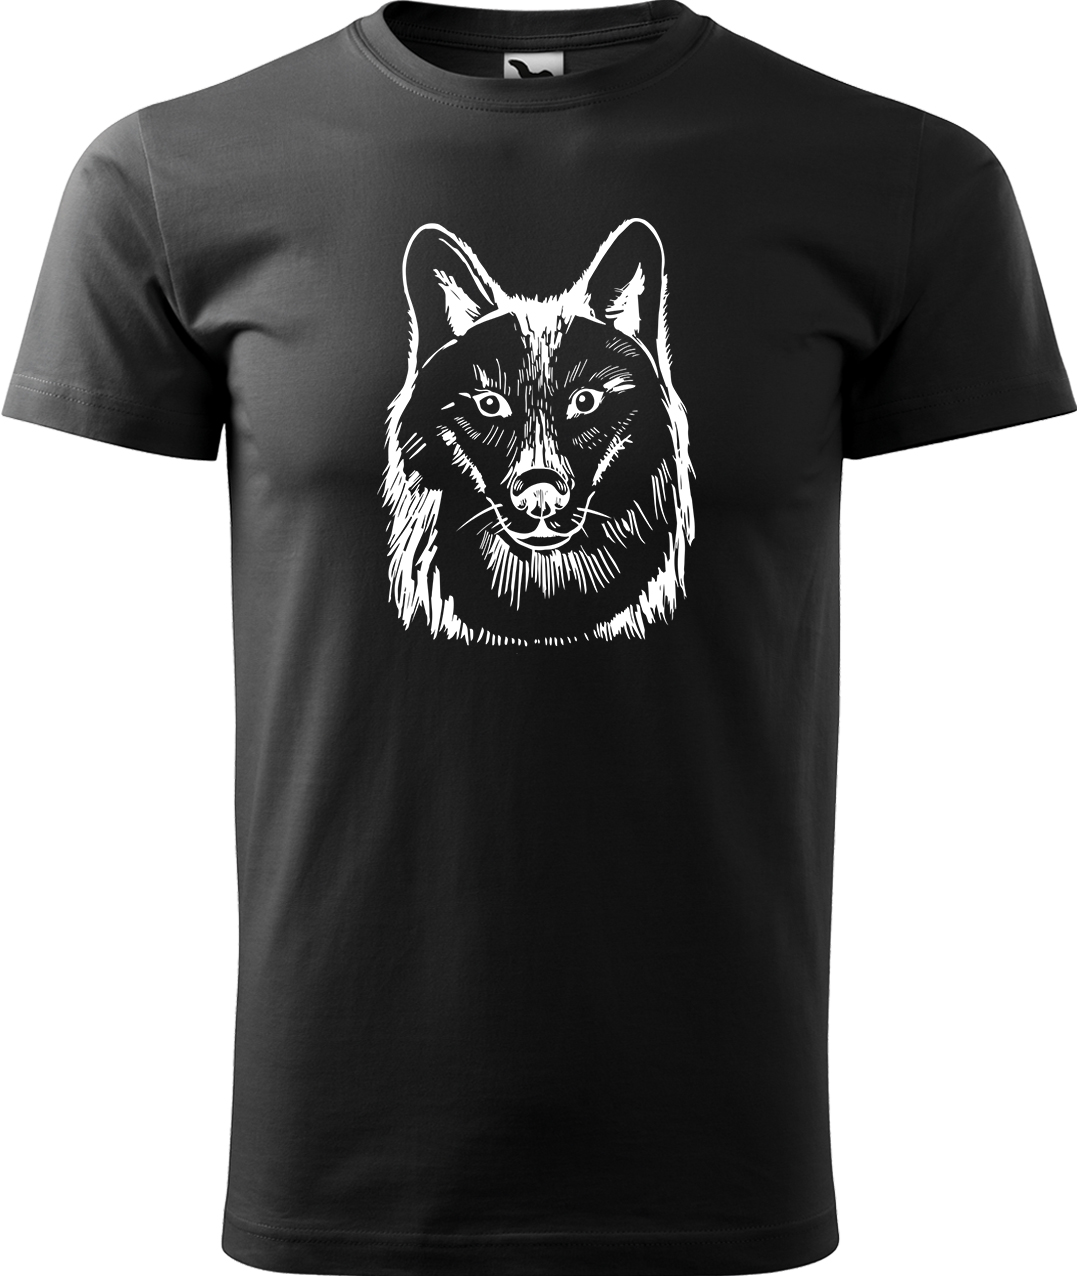 Pánské tričko s vlkem - Kresba vlka Velikost: M, Barva: Černá (01), Střih: pánský